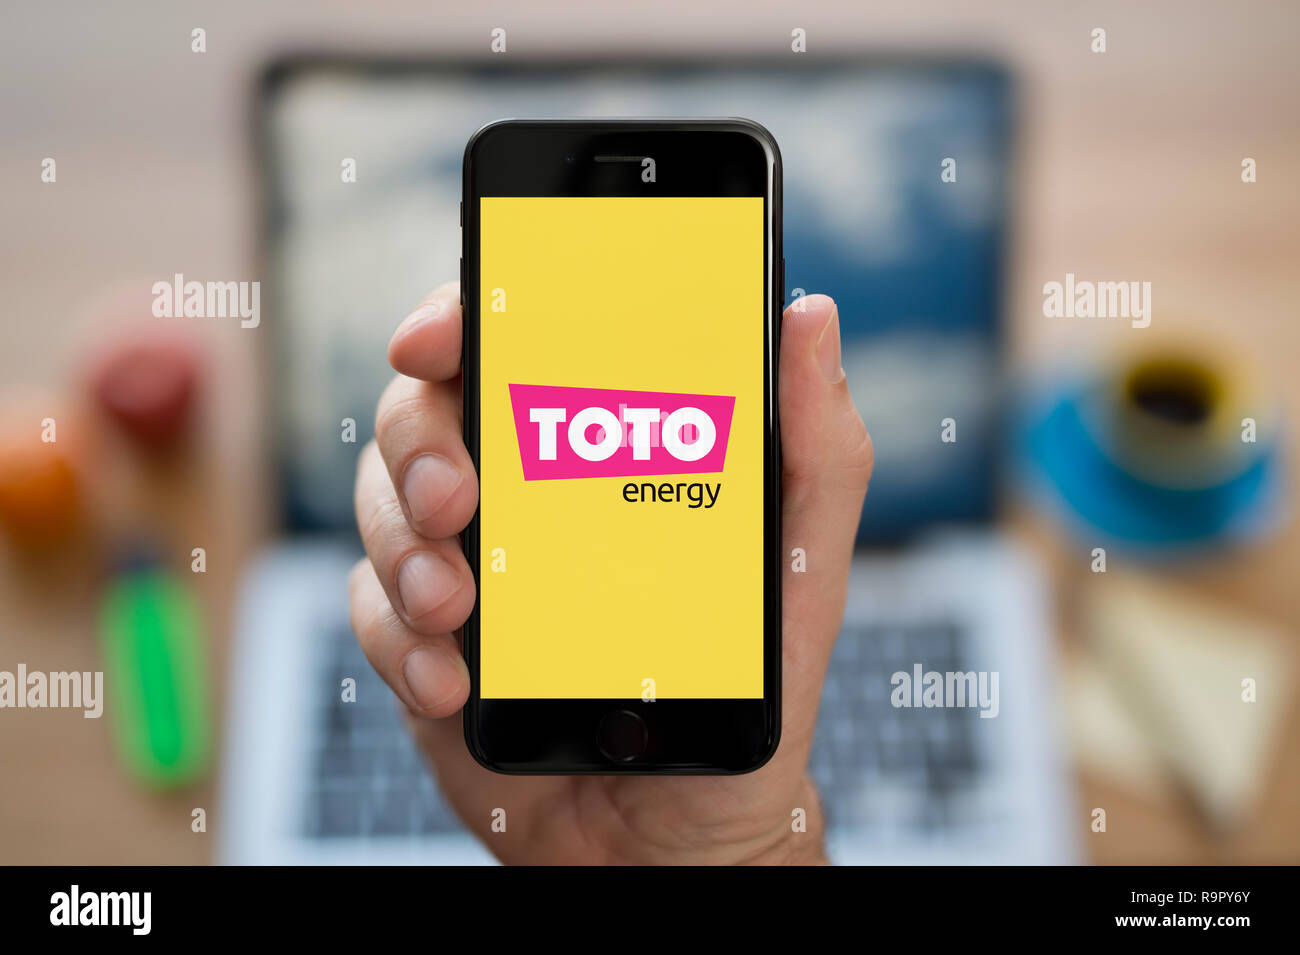 Un homme se penche sur son iPhone qui affiche le logo de l'énergie Toto  (usage éditorial uniquement Photo Stock - Alamy